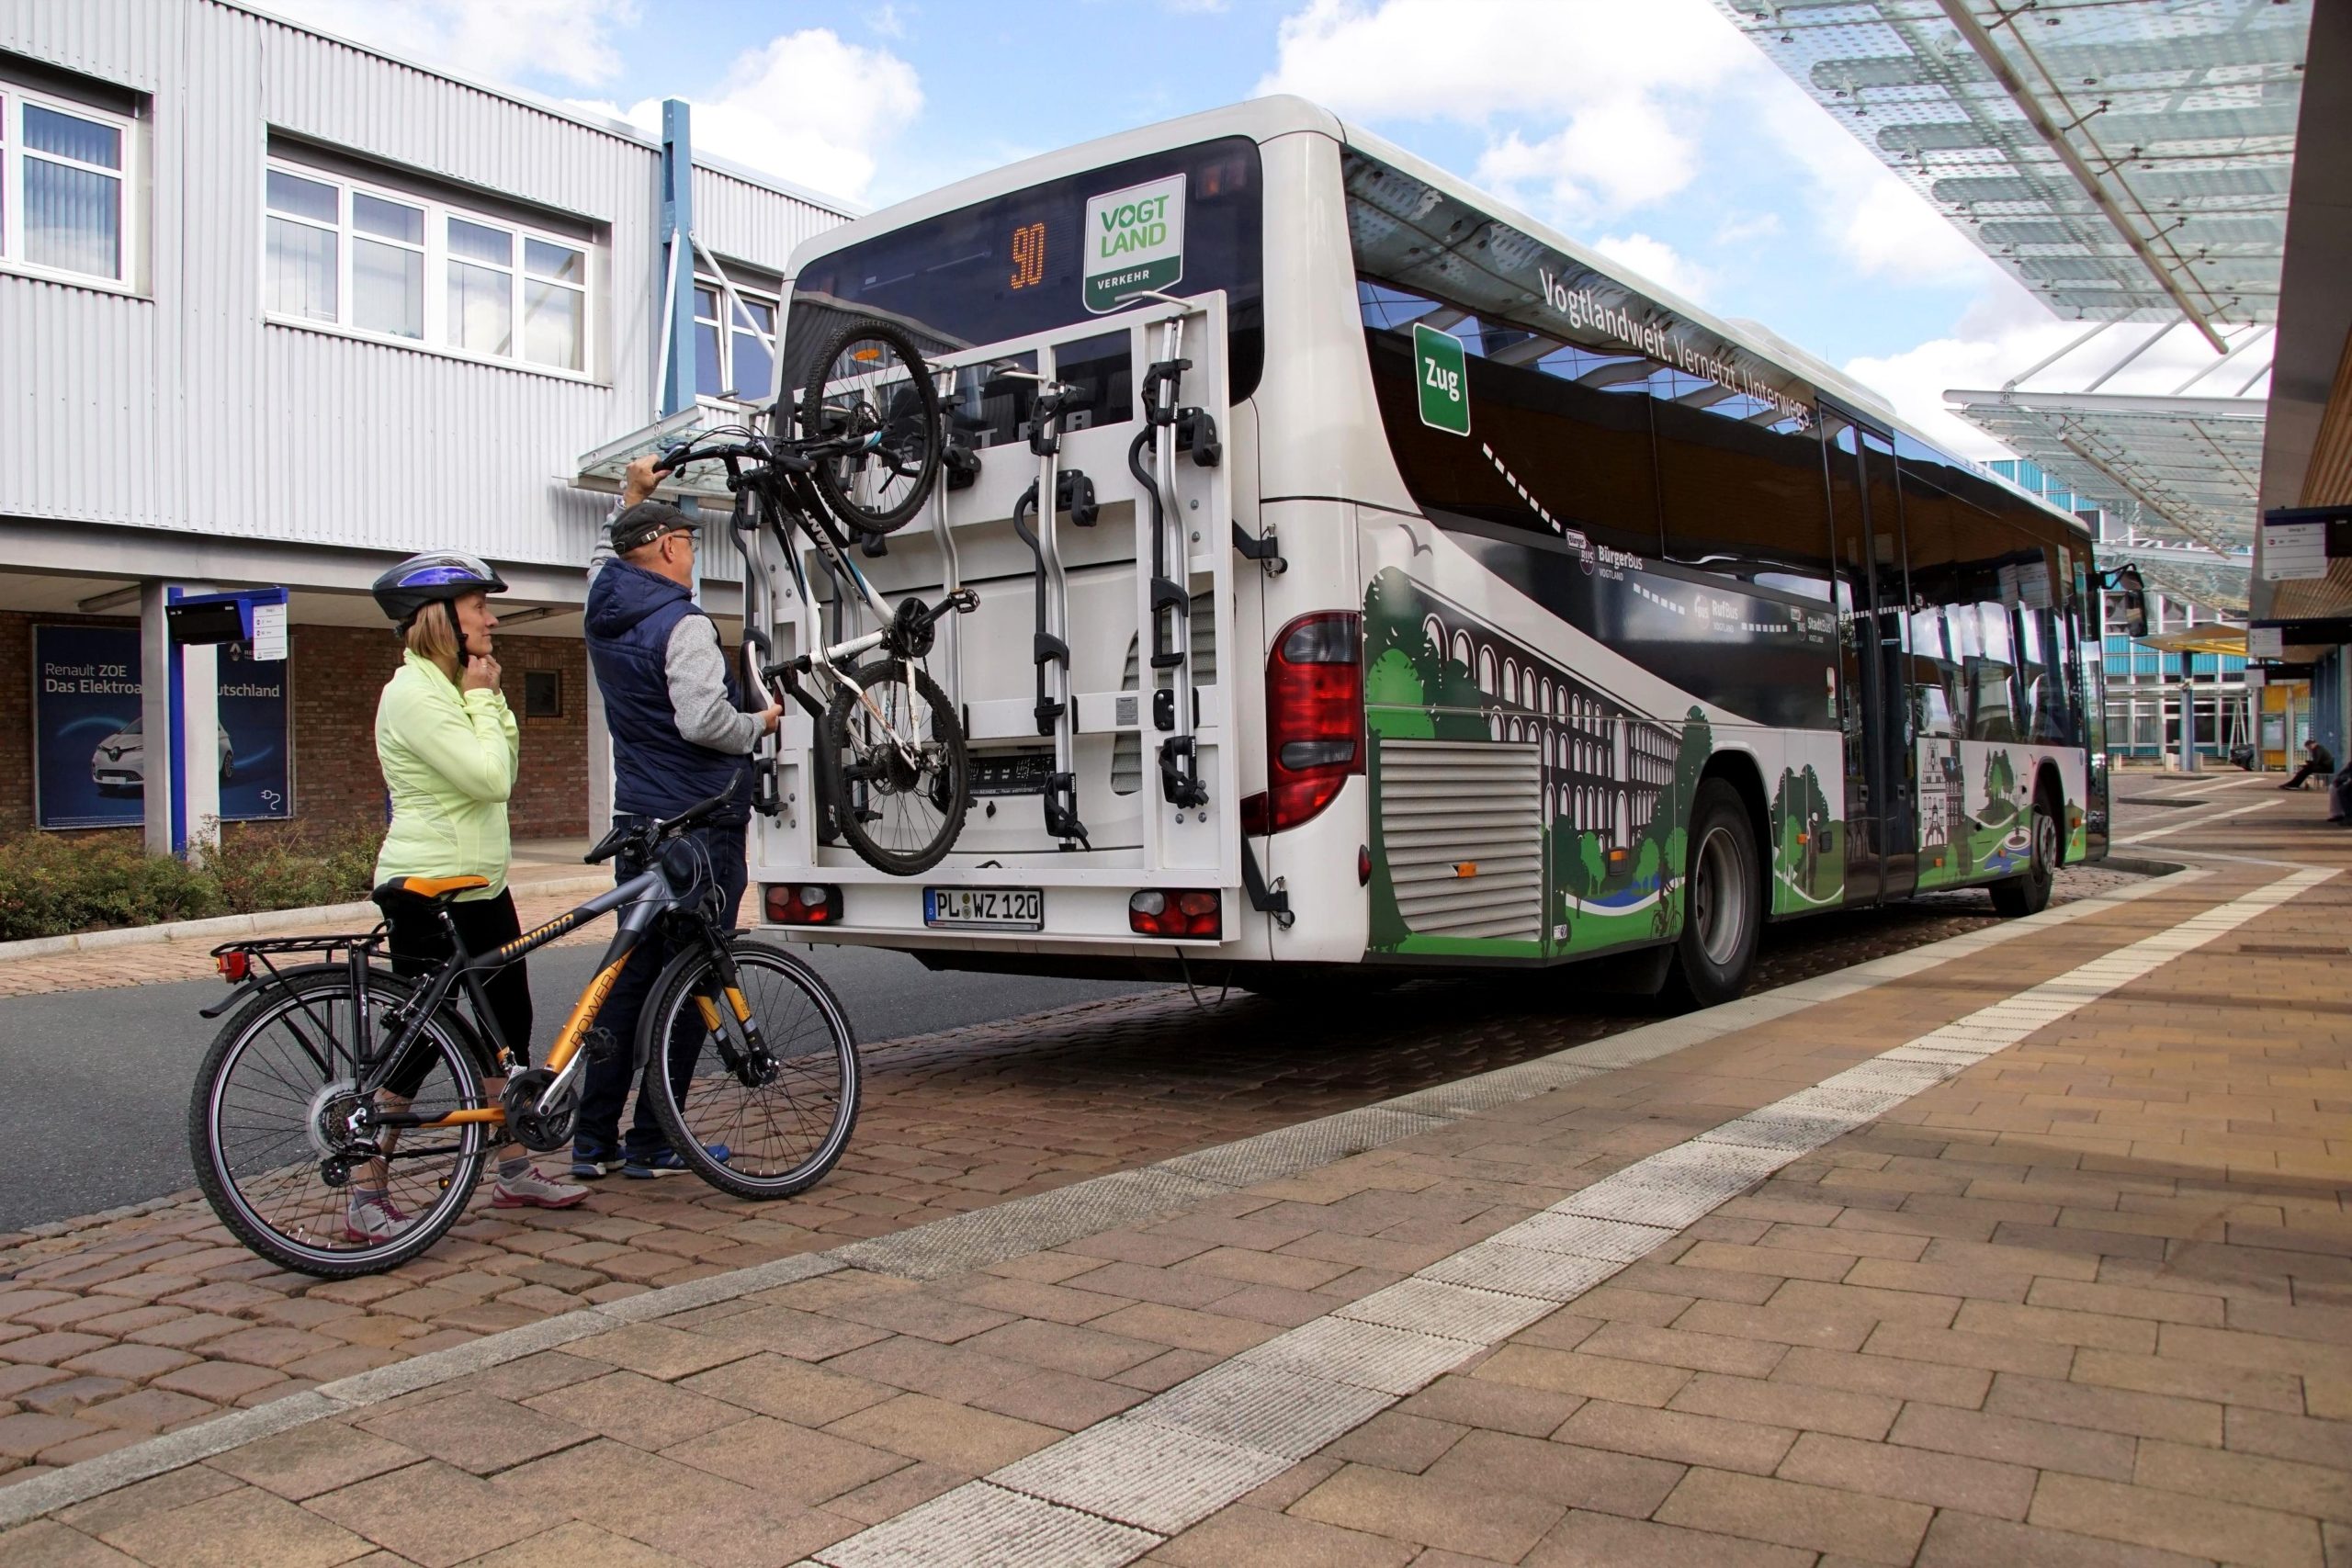 Verkehrsverbund digitalisiert Busbahnhof in Plauen